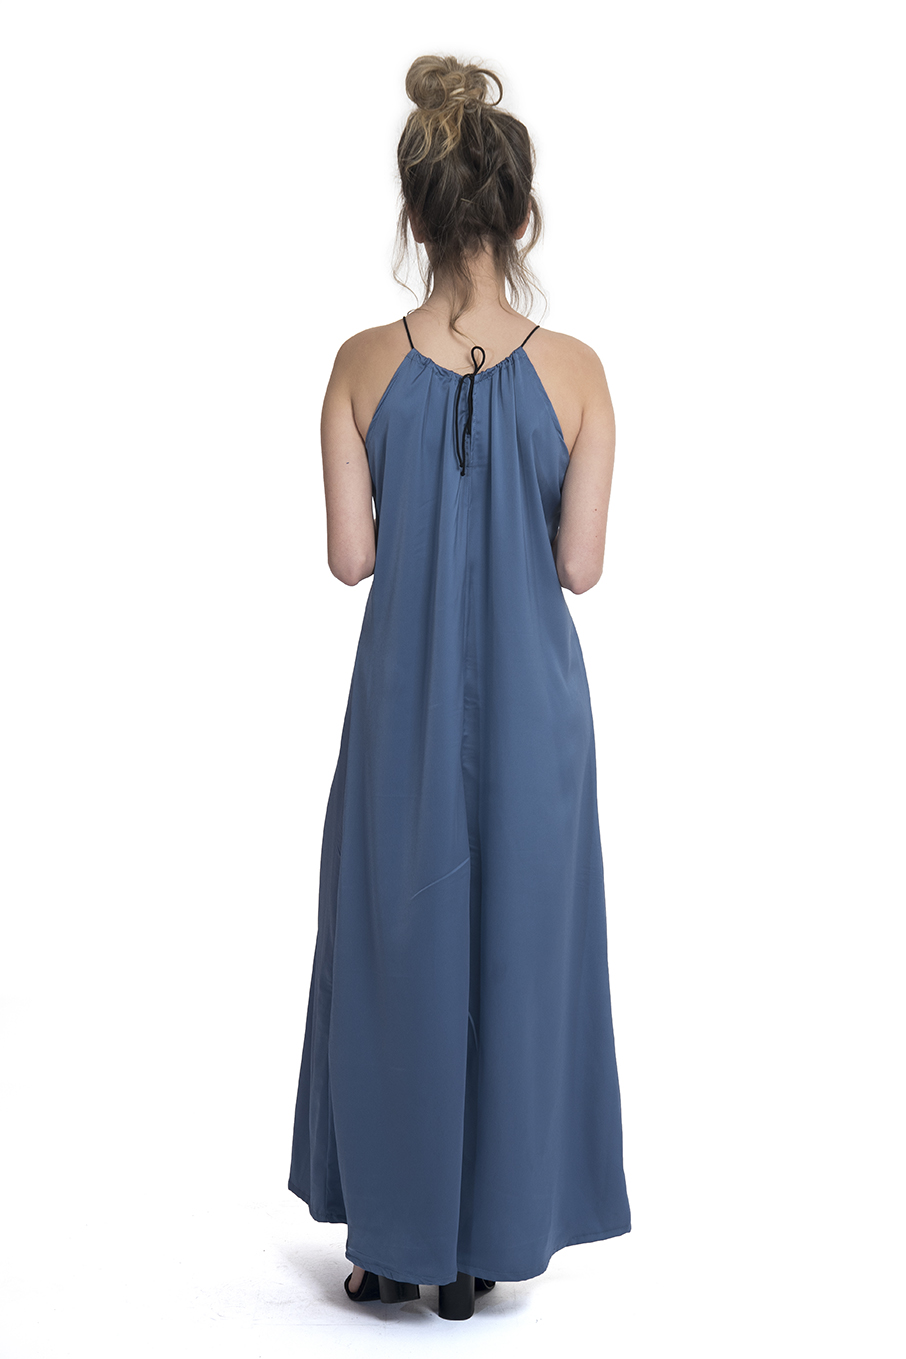 שמלה מוניק פטרול - שמלות ערב | Tali Kashy Design טלי קאשי